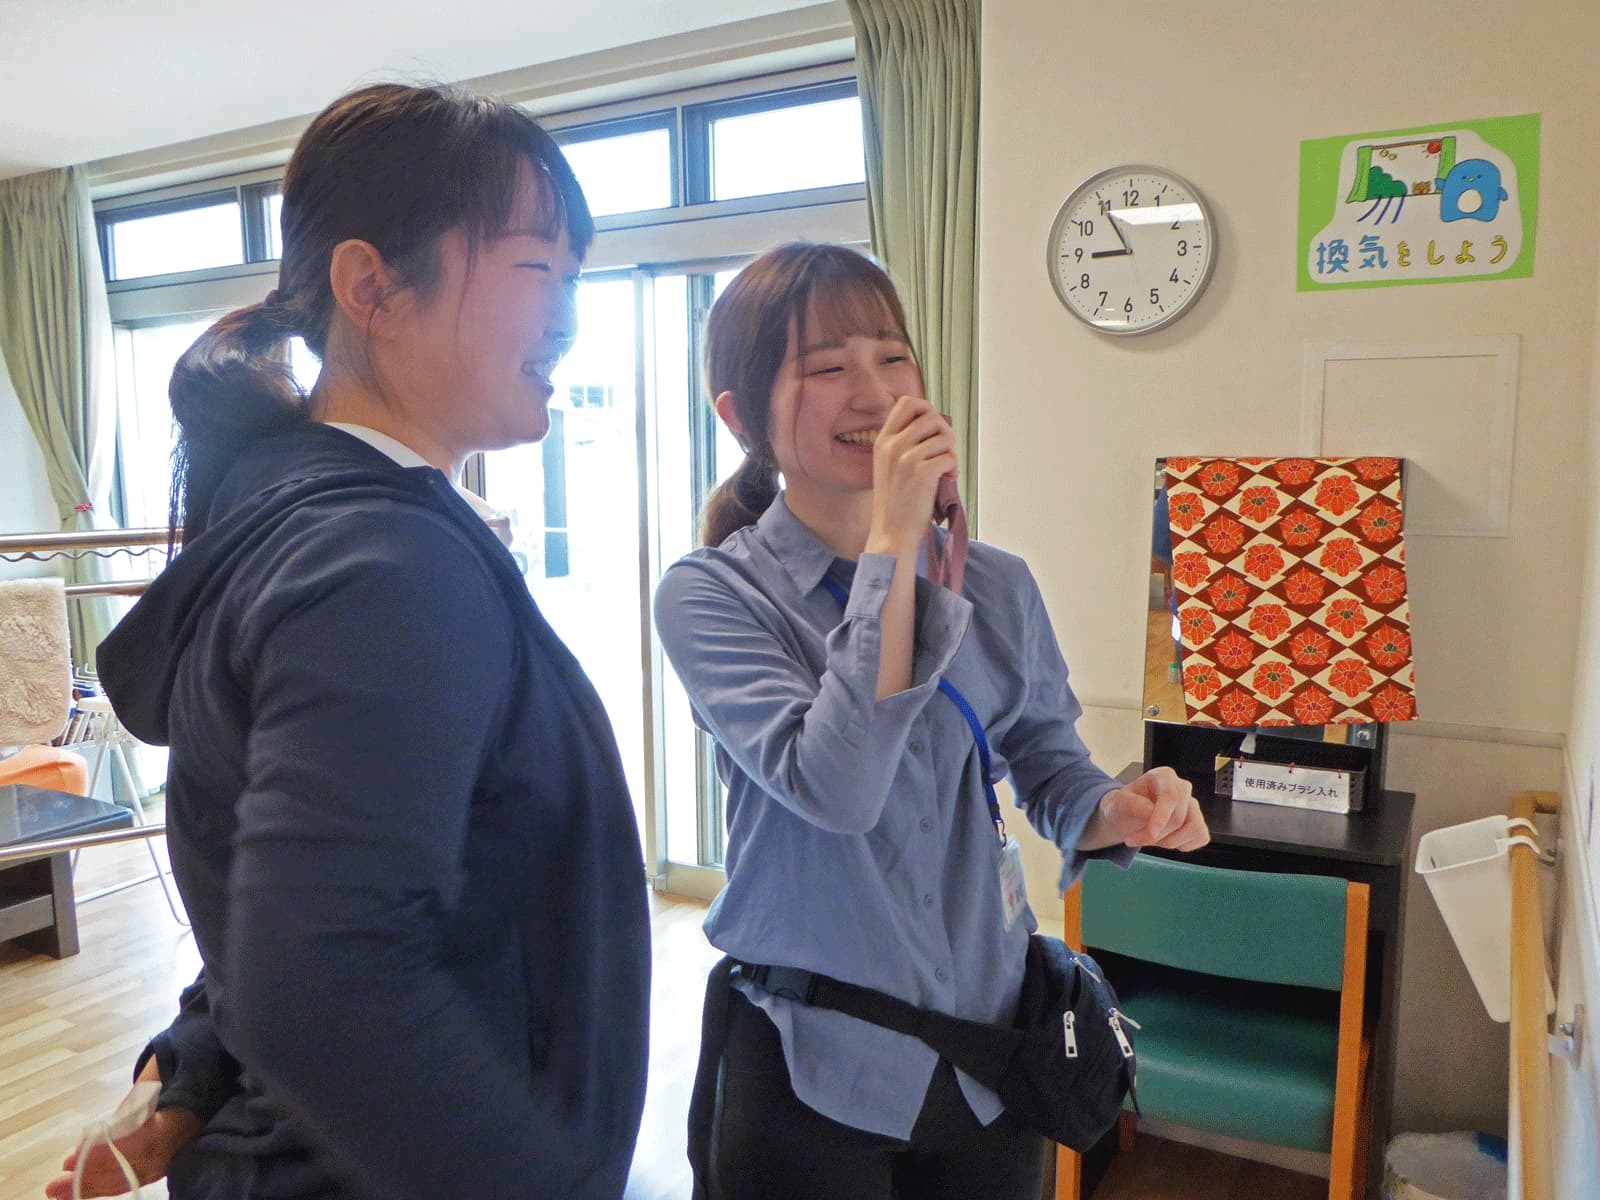 大阪いずみ市民生活協同組合 コープふれあい福祉センターの求人